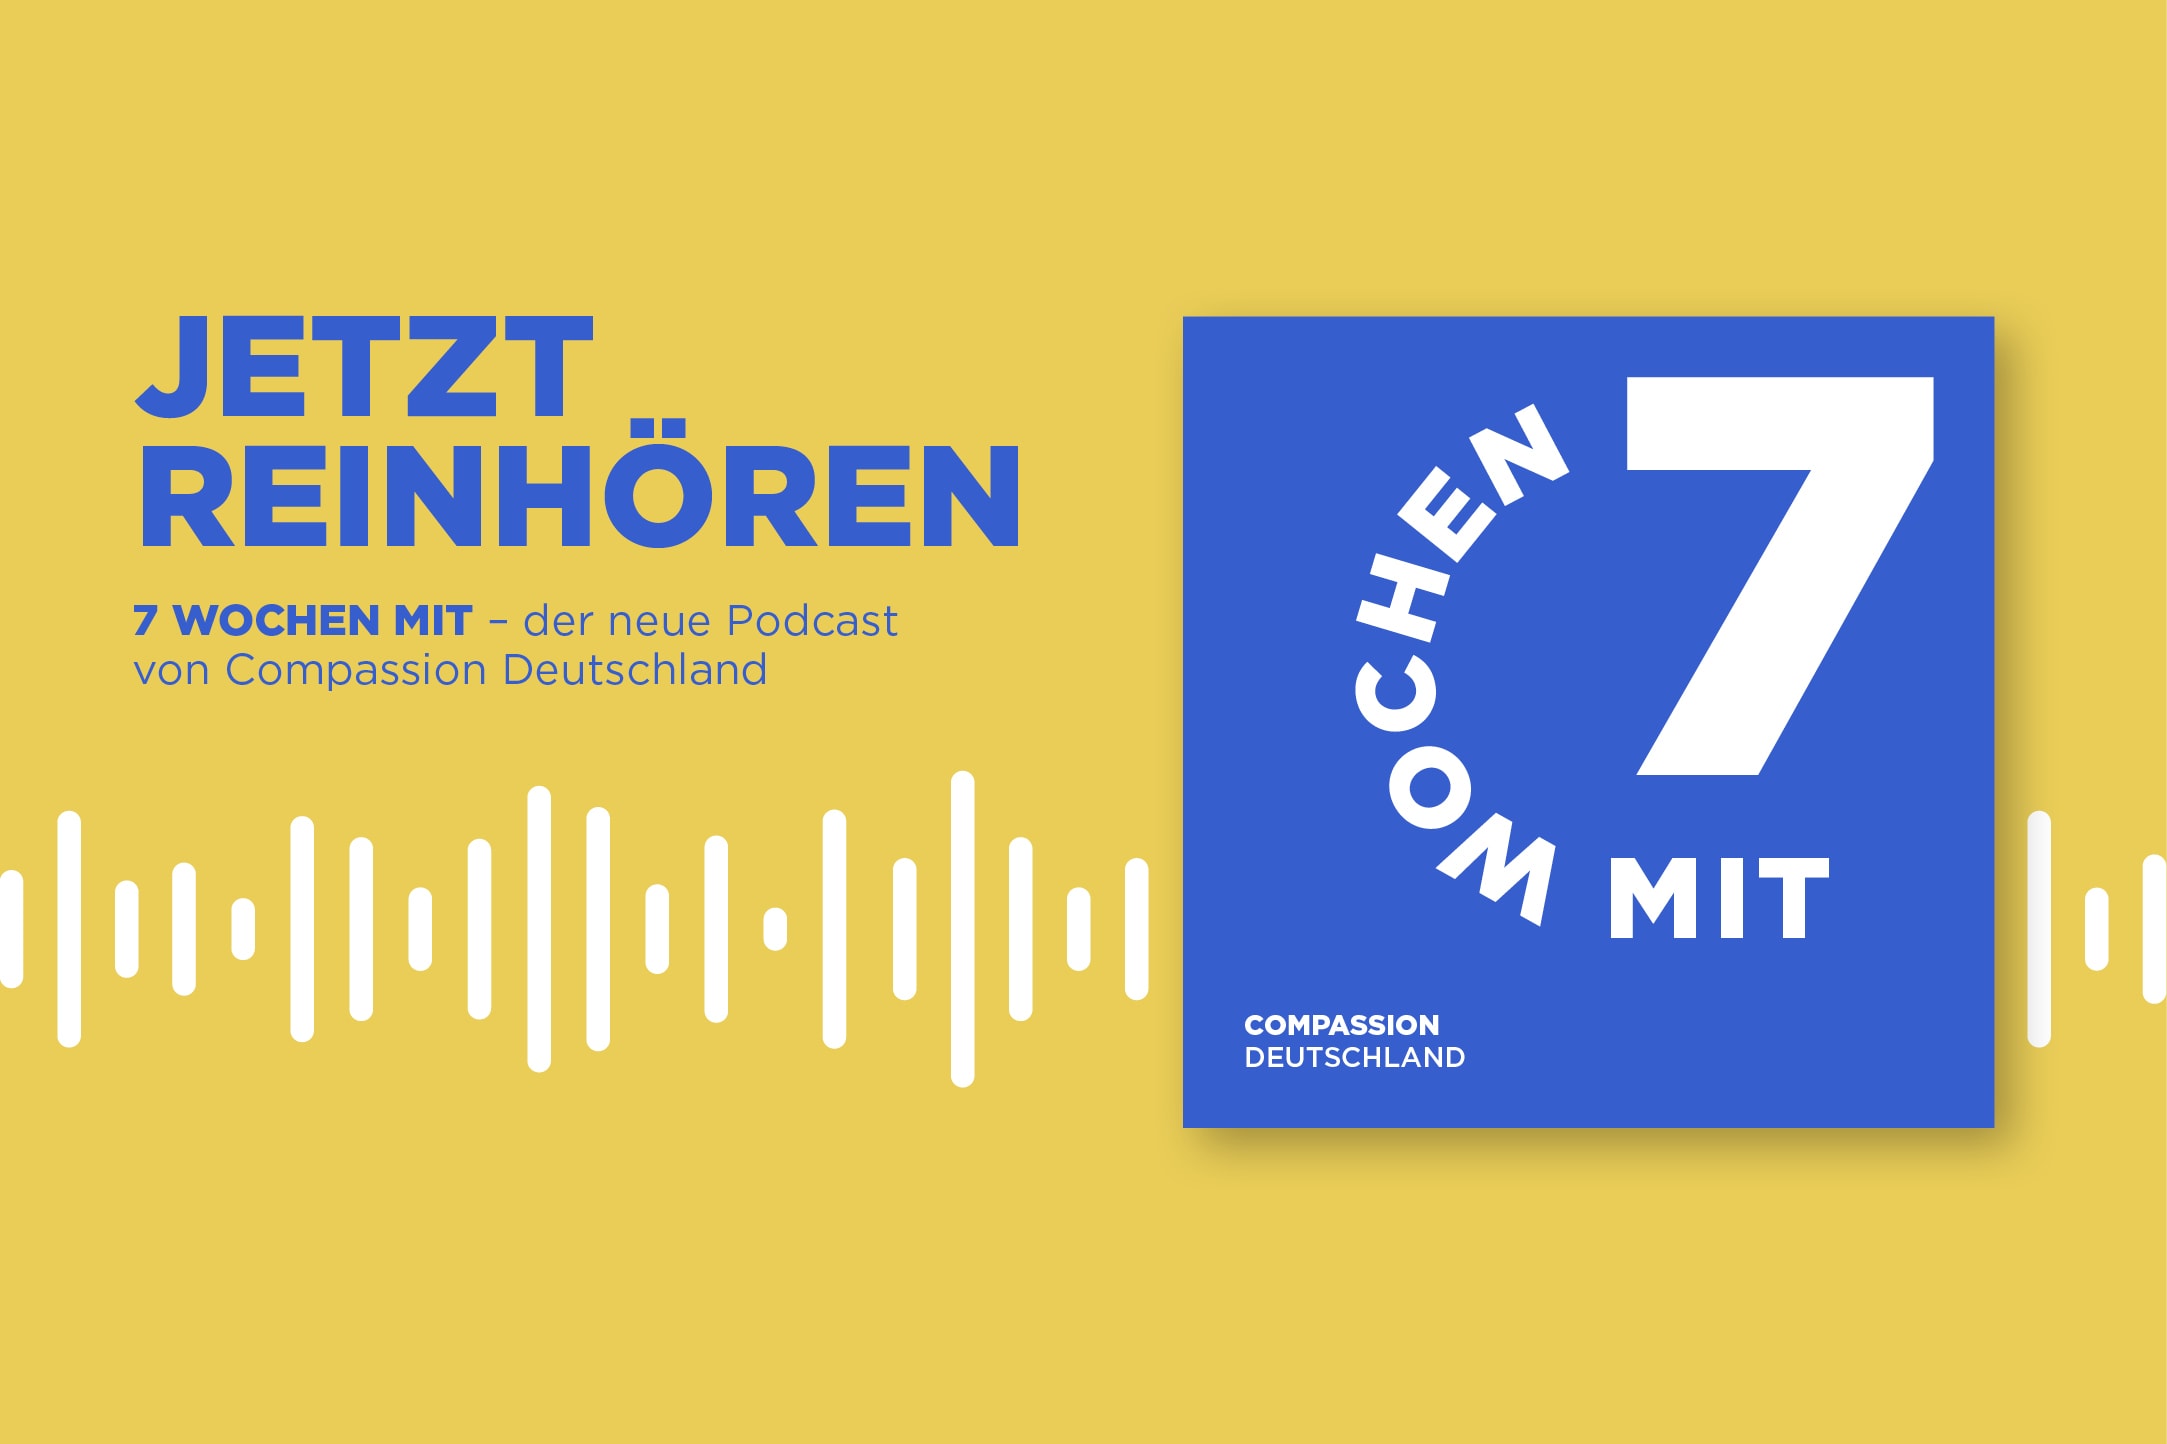 alt="Podcast Compassion Deutschland"